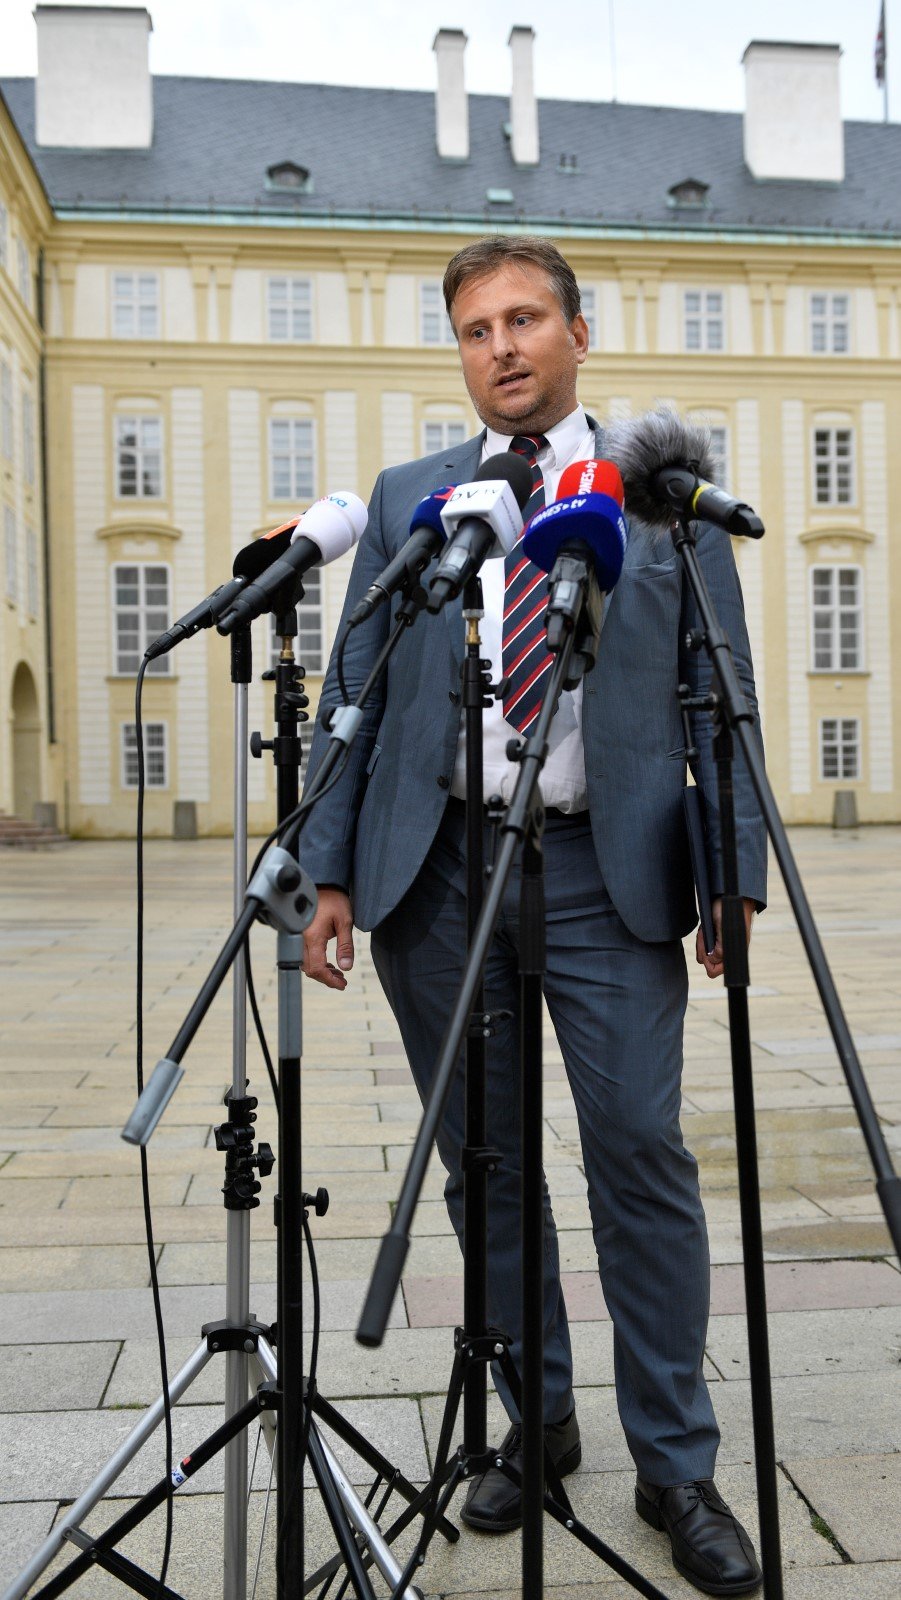 Nový ministr spravedlnosti Jan Kněžínek při setkání s novináři po svém jmenování 10. července 2018 na Pražském hradě.